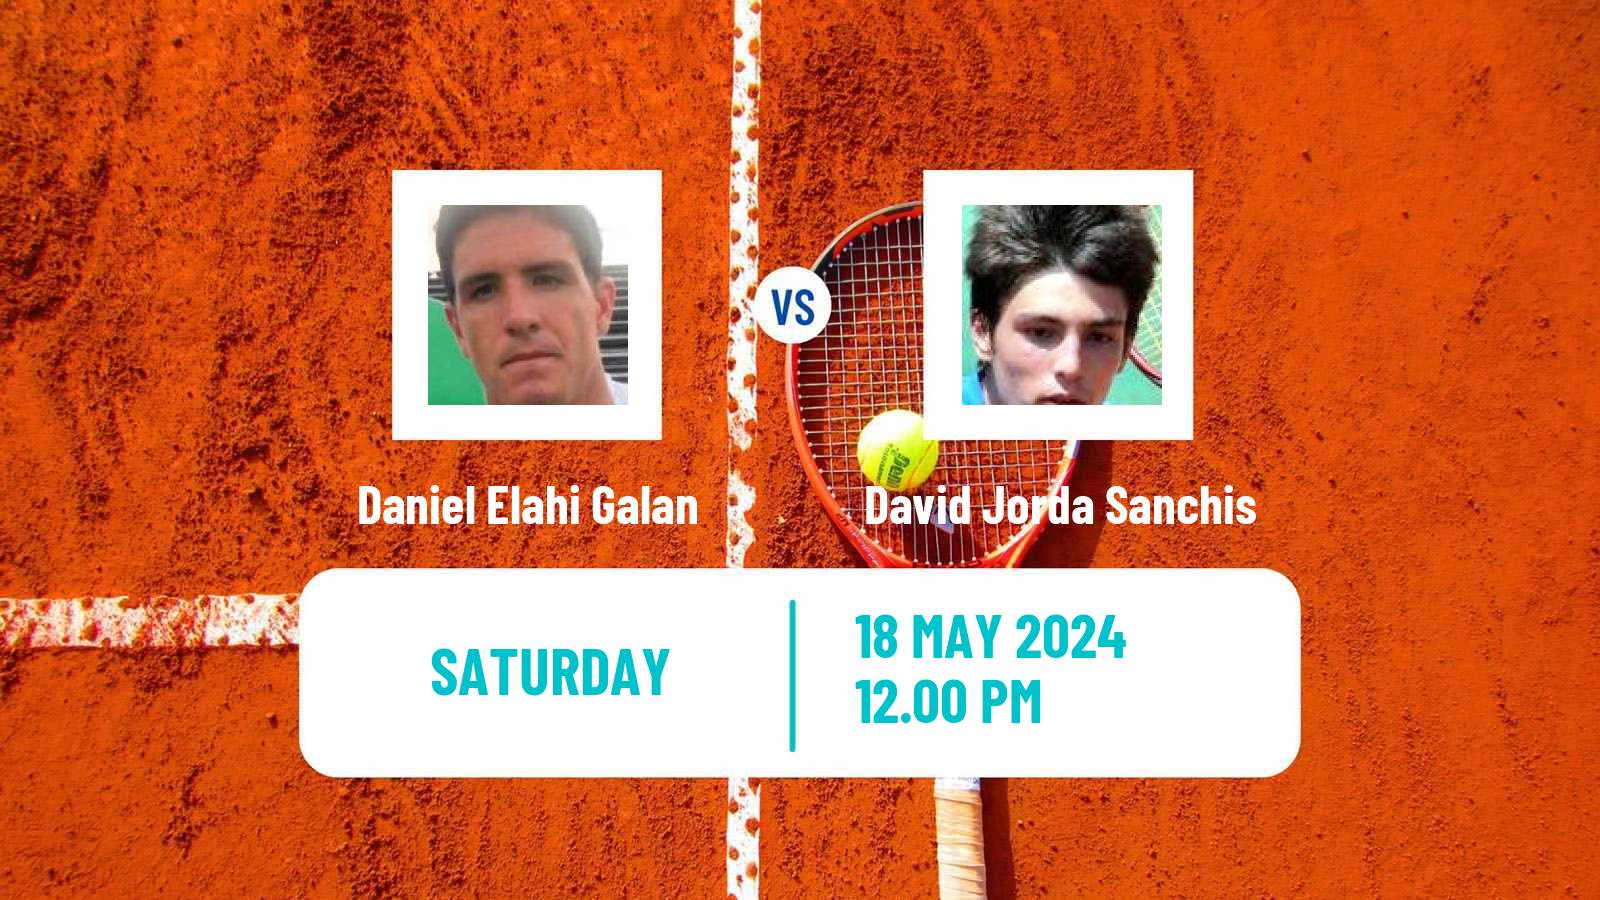 Tennis ATP Lyon Daniel Elahi Galan - David Jorda Sanchis